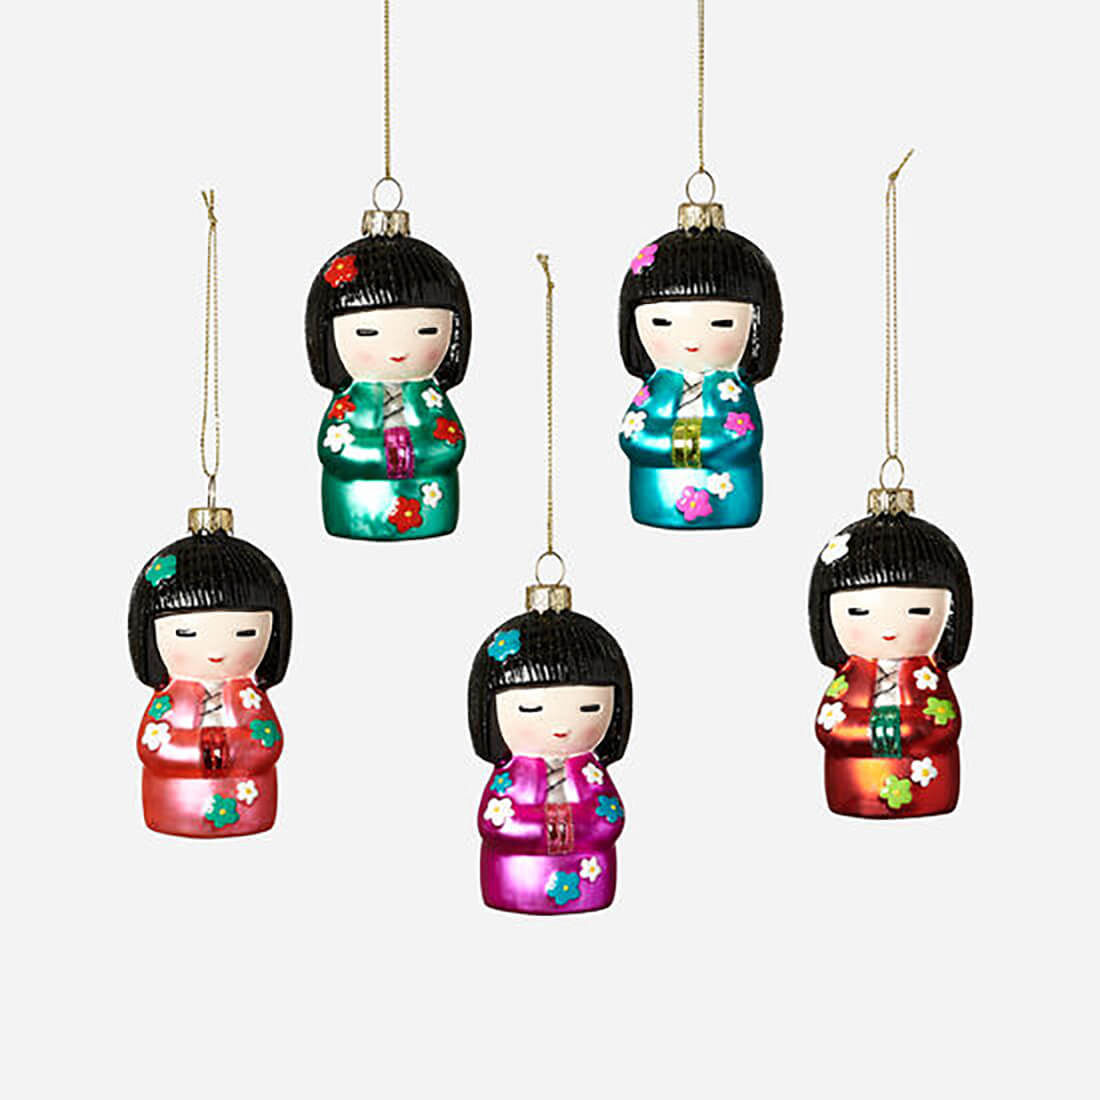 Japanese Kokeshi Doll, Japanese Souvenir, Home Decor Aesthetic, Desk Decor  Women, Purple Gifts for Women, Birthday Gift for Mom 